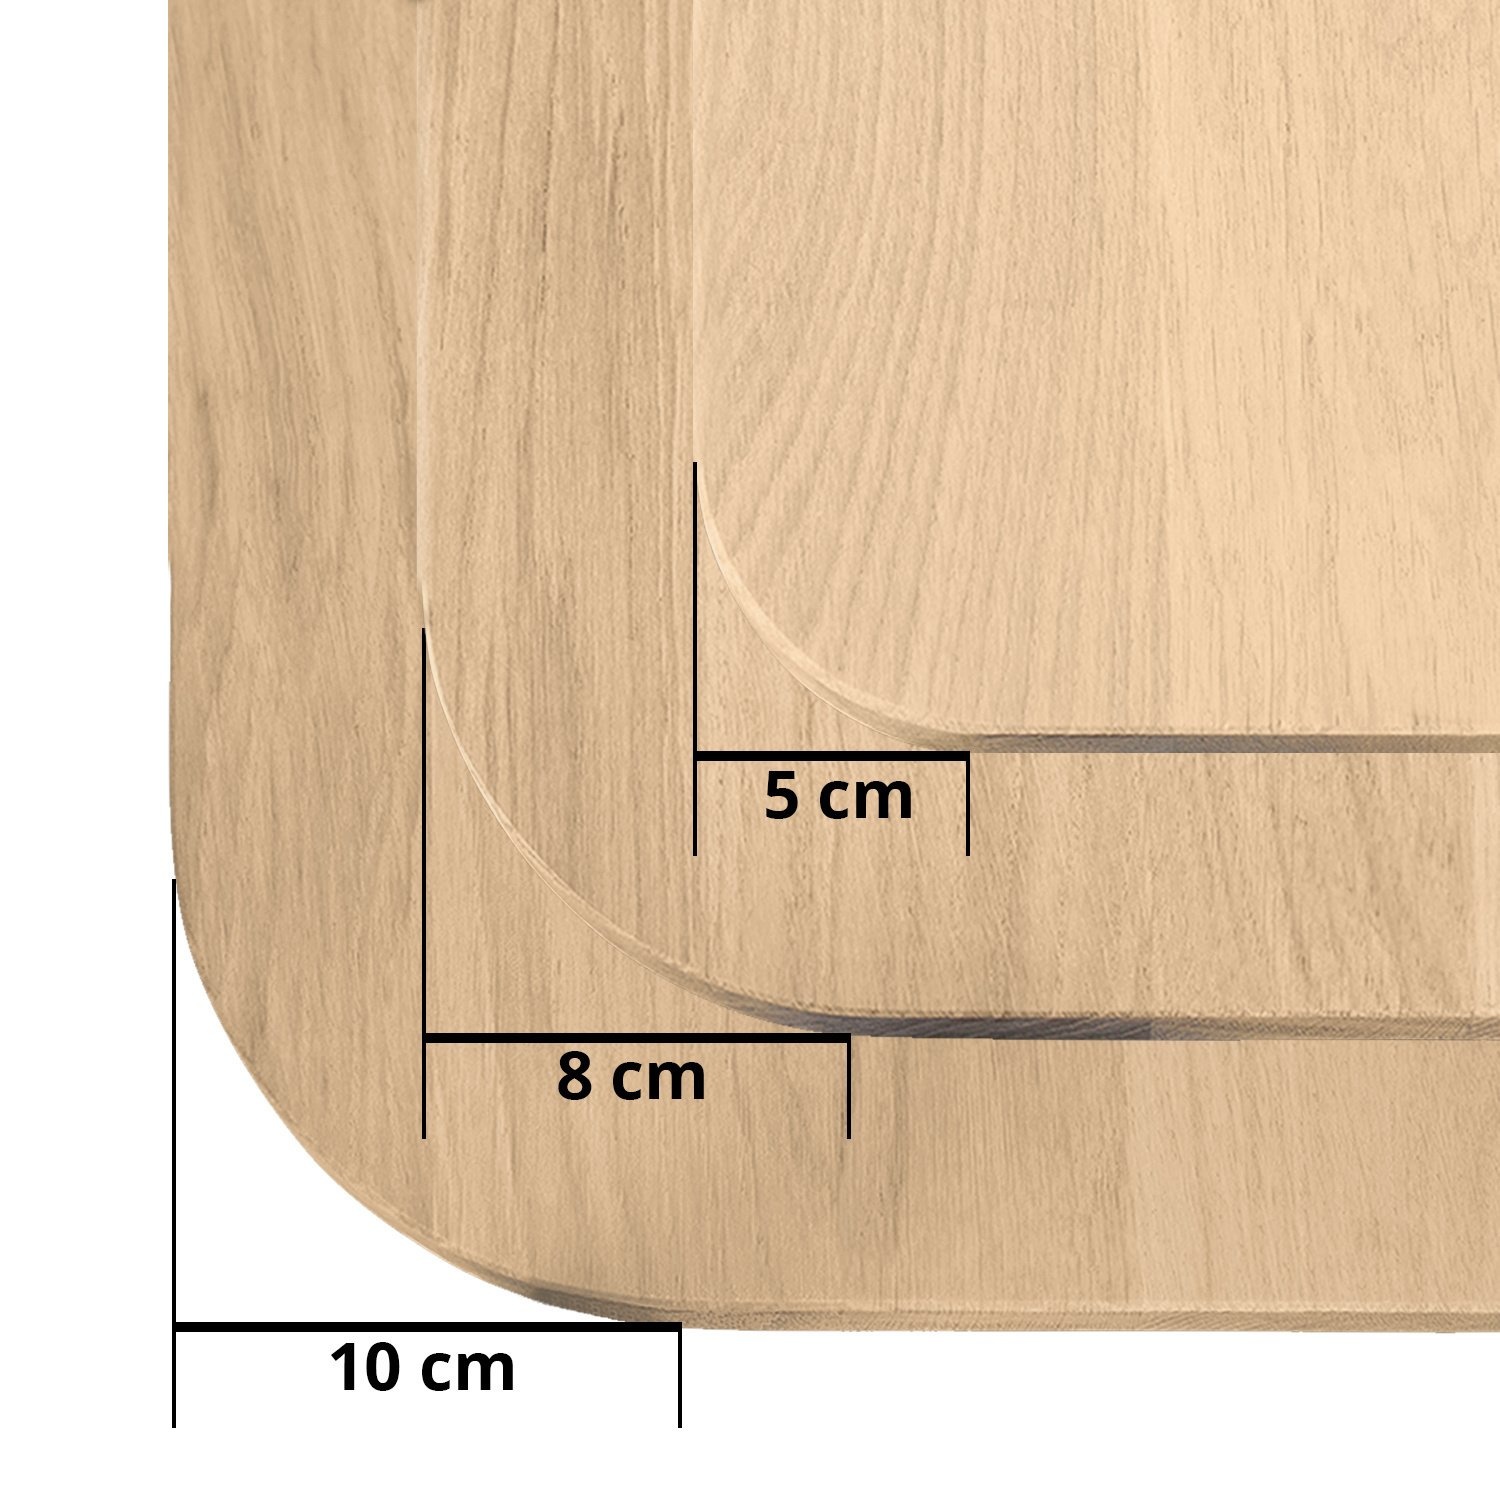  Tischplatte Wildeiche - mit runden Ecken - 4 cm dick (1-Schicht) - XXL Lamellen (14-20 cm breit) - Asteiche (rustikal) - verleimt & künstlich getrocknet (HF 8-12%) - mit abgerundeten Kanten - verschiedene Größen